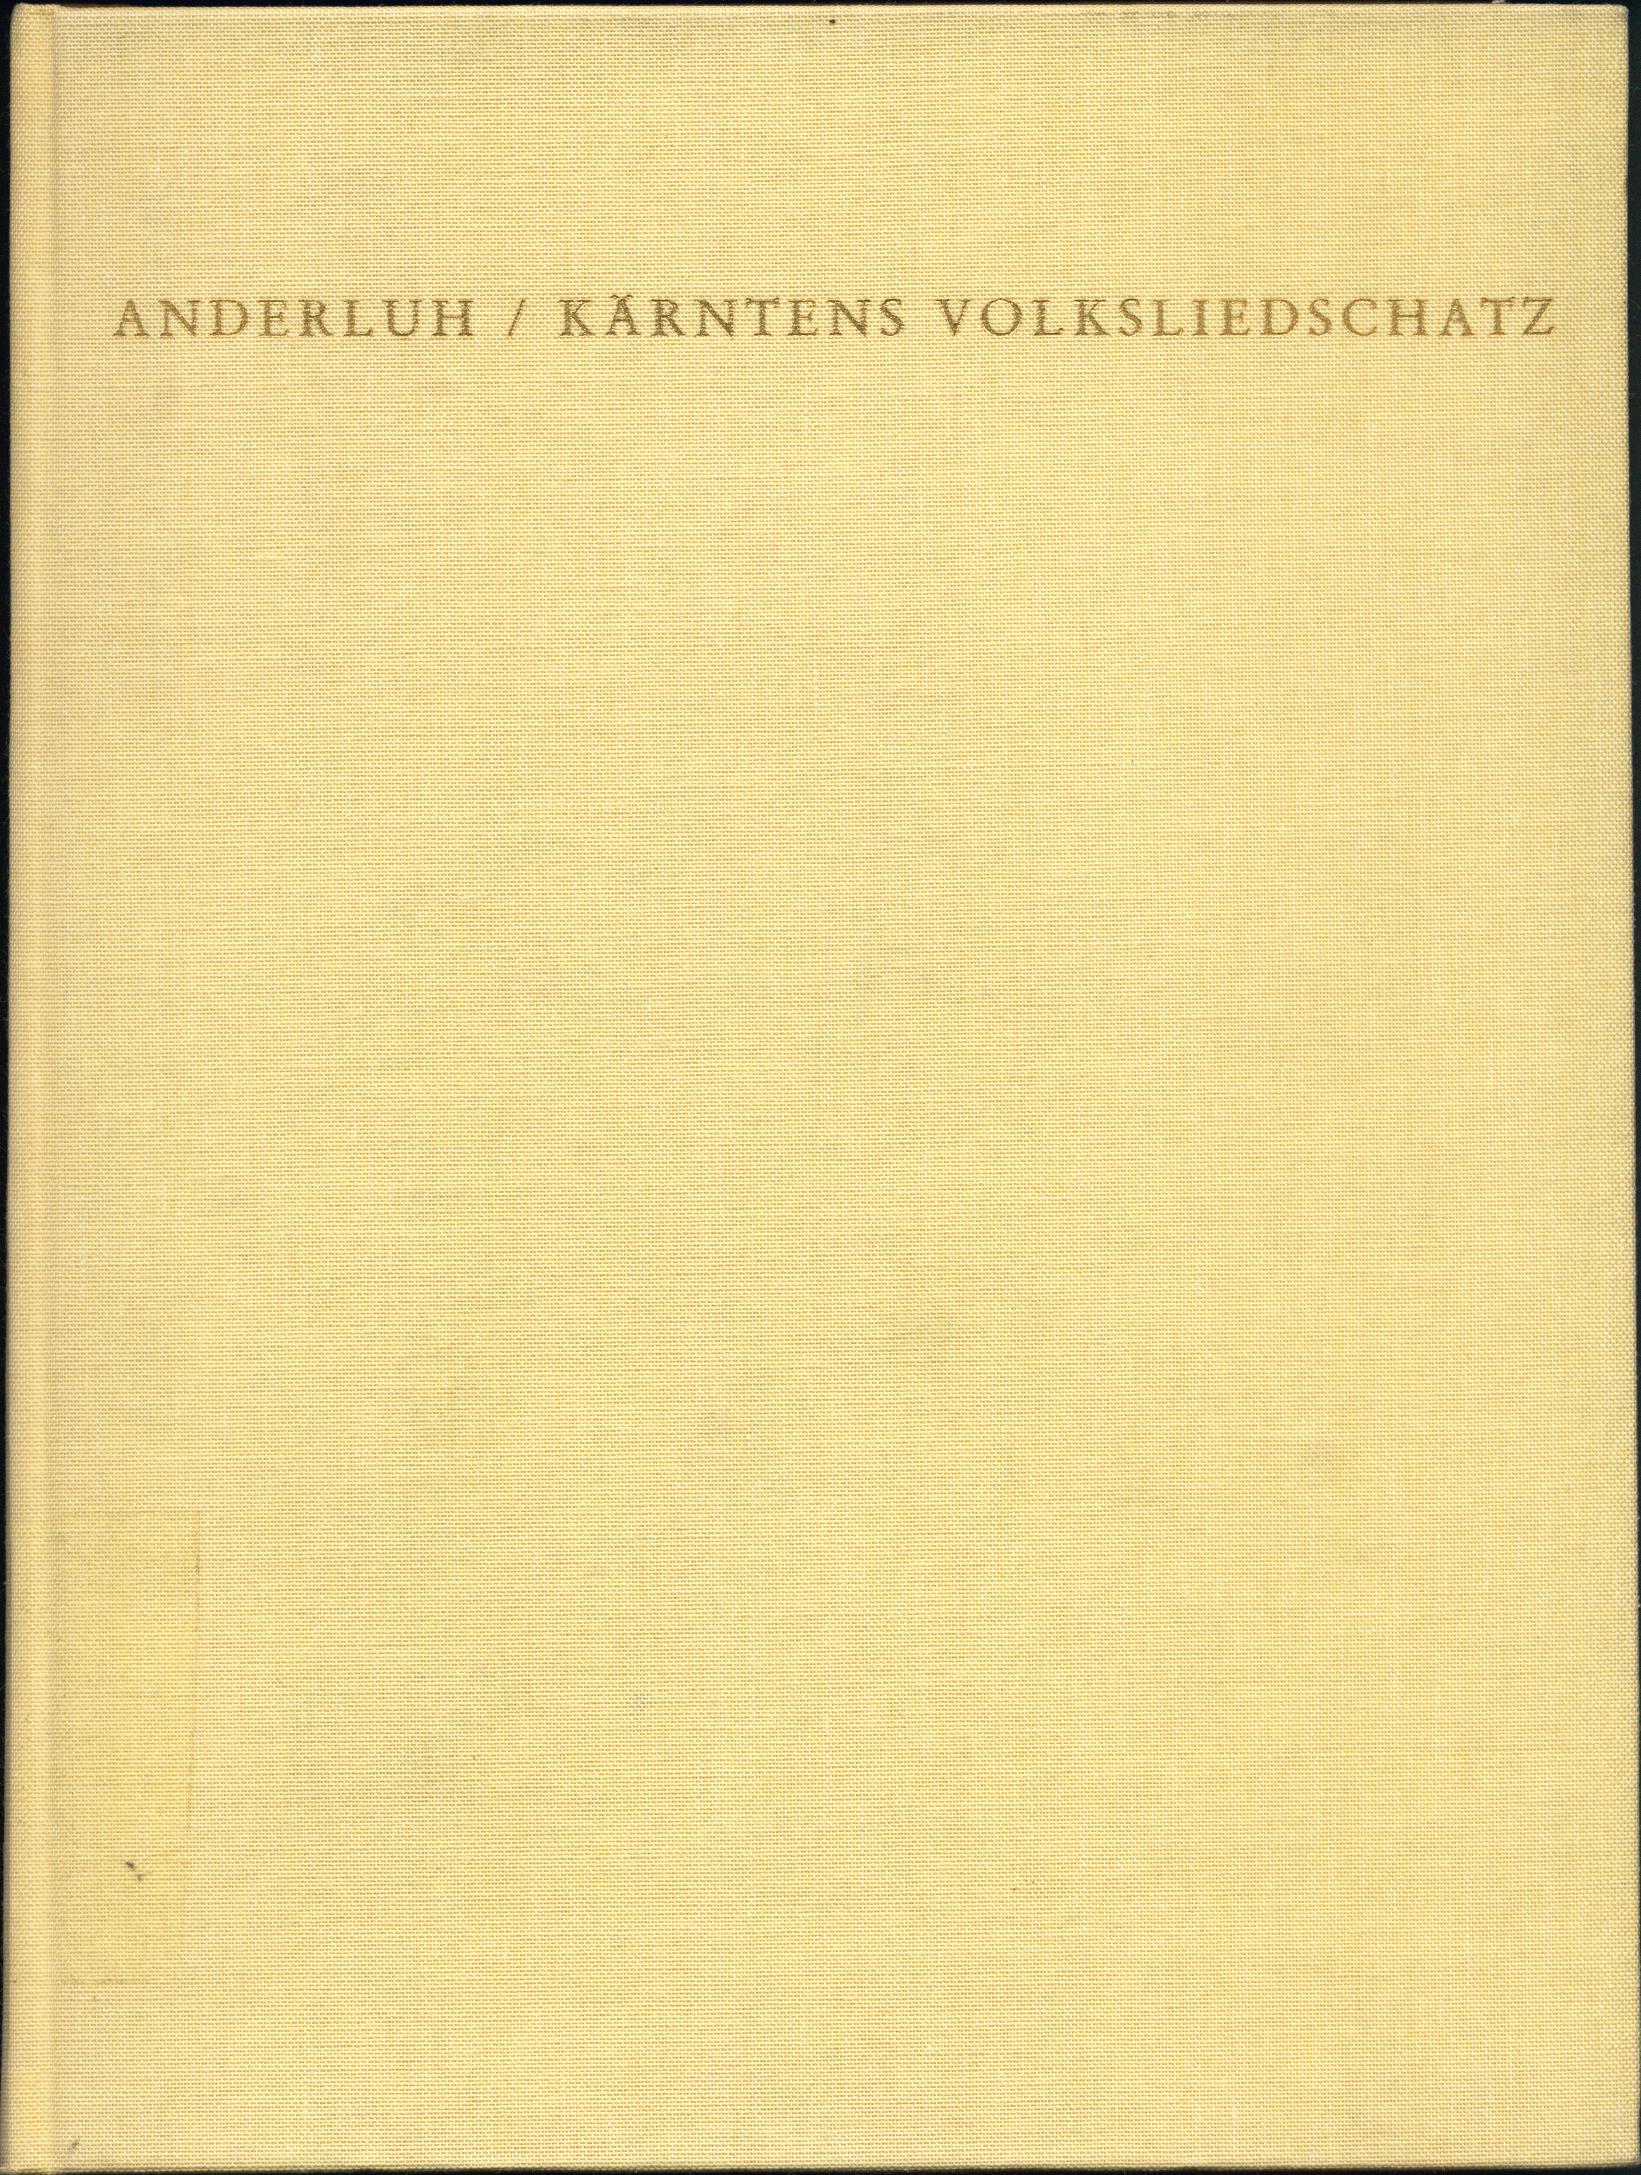 Kärntens Volksliedschatz Scherz-, Spott- und Spiellieder, Sauf-, Trink- und Hallodri-Lieder 1. Auflage, - Anderluh, Anton